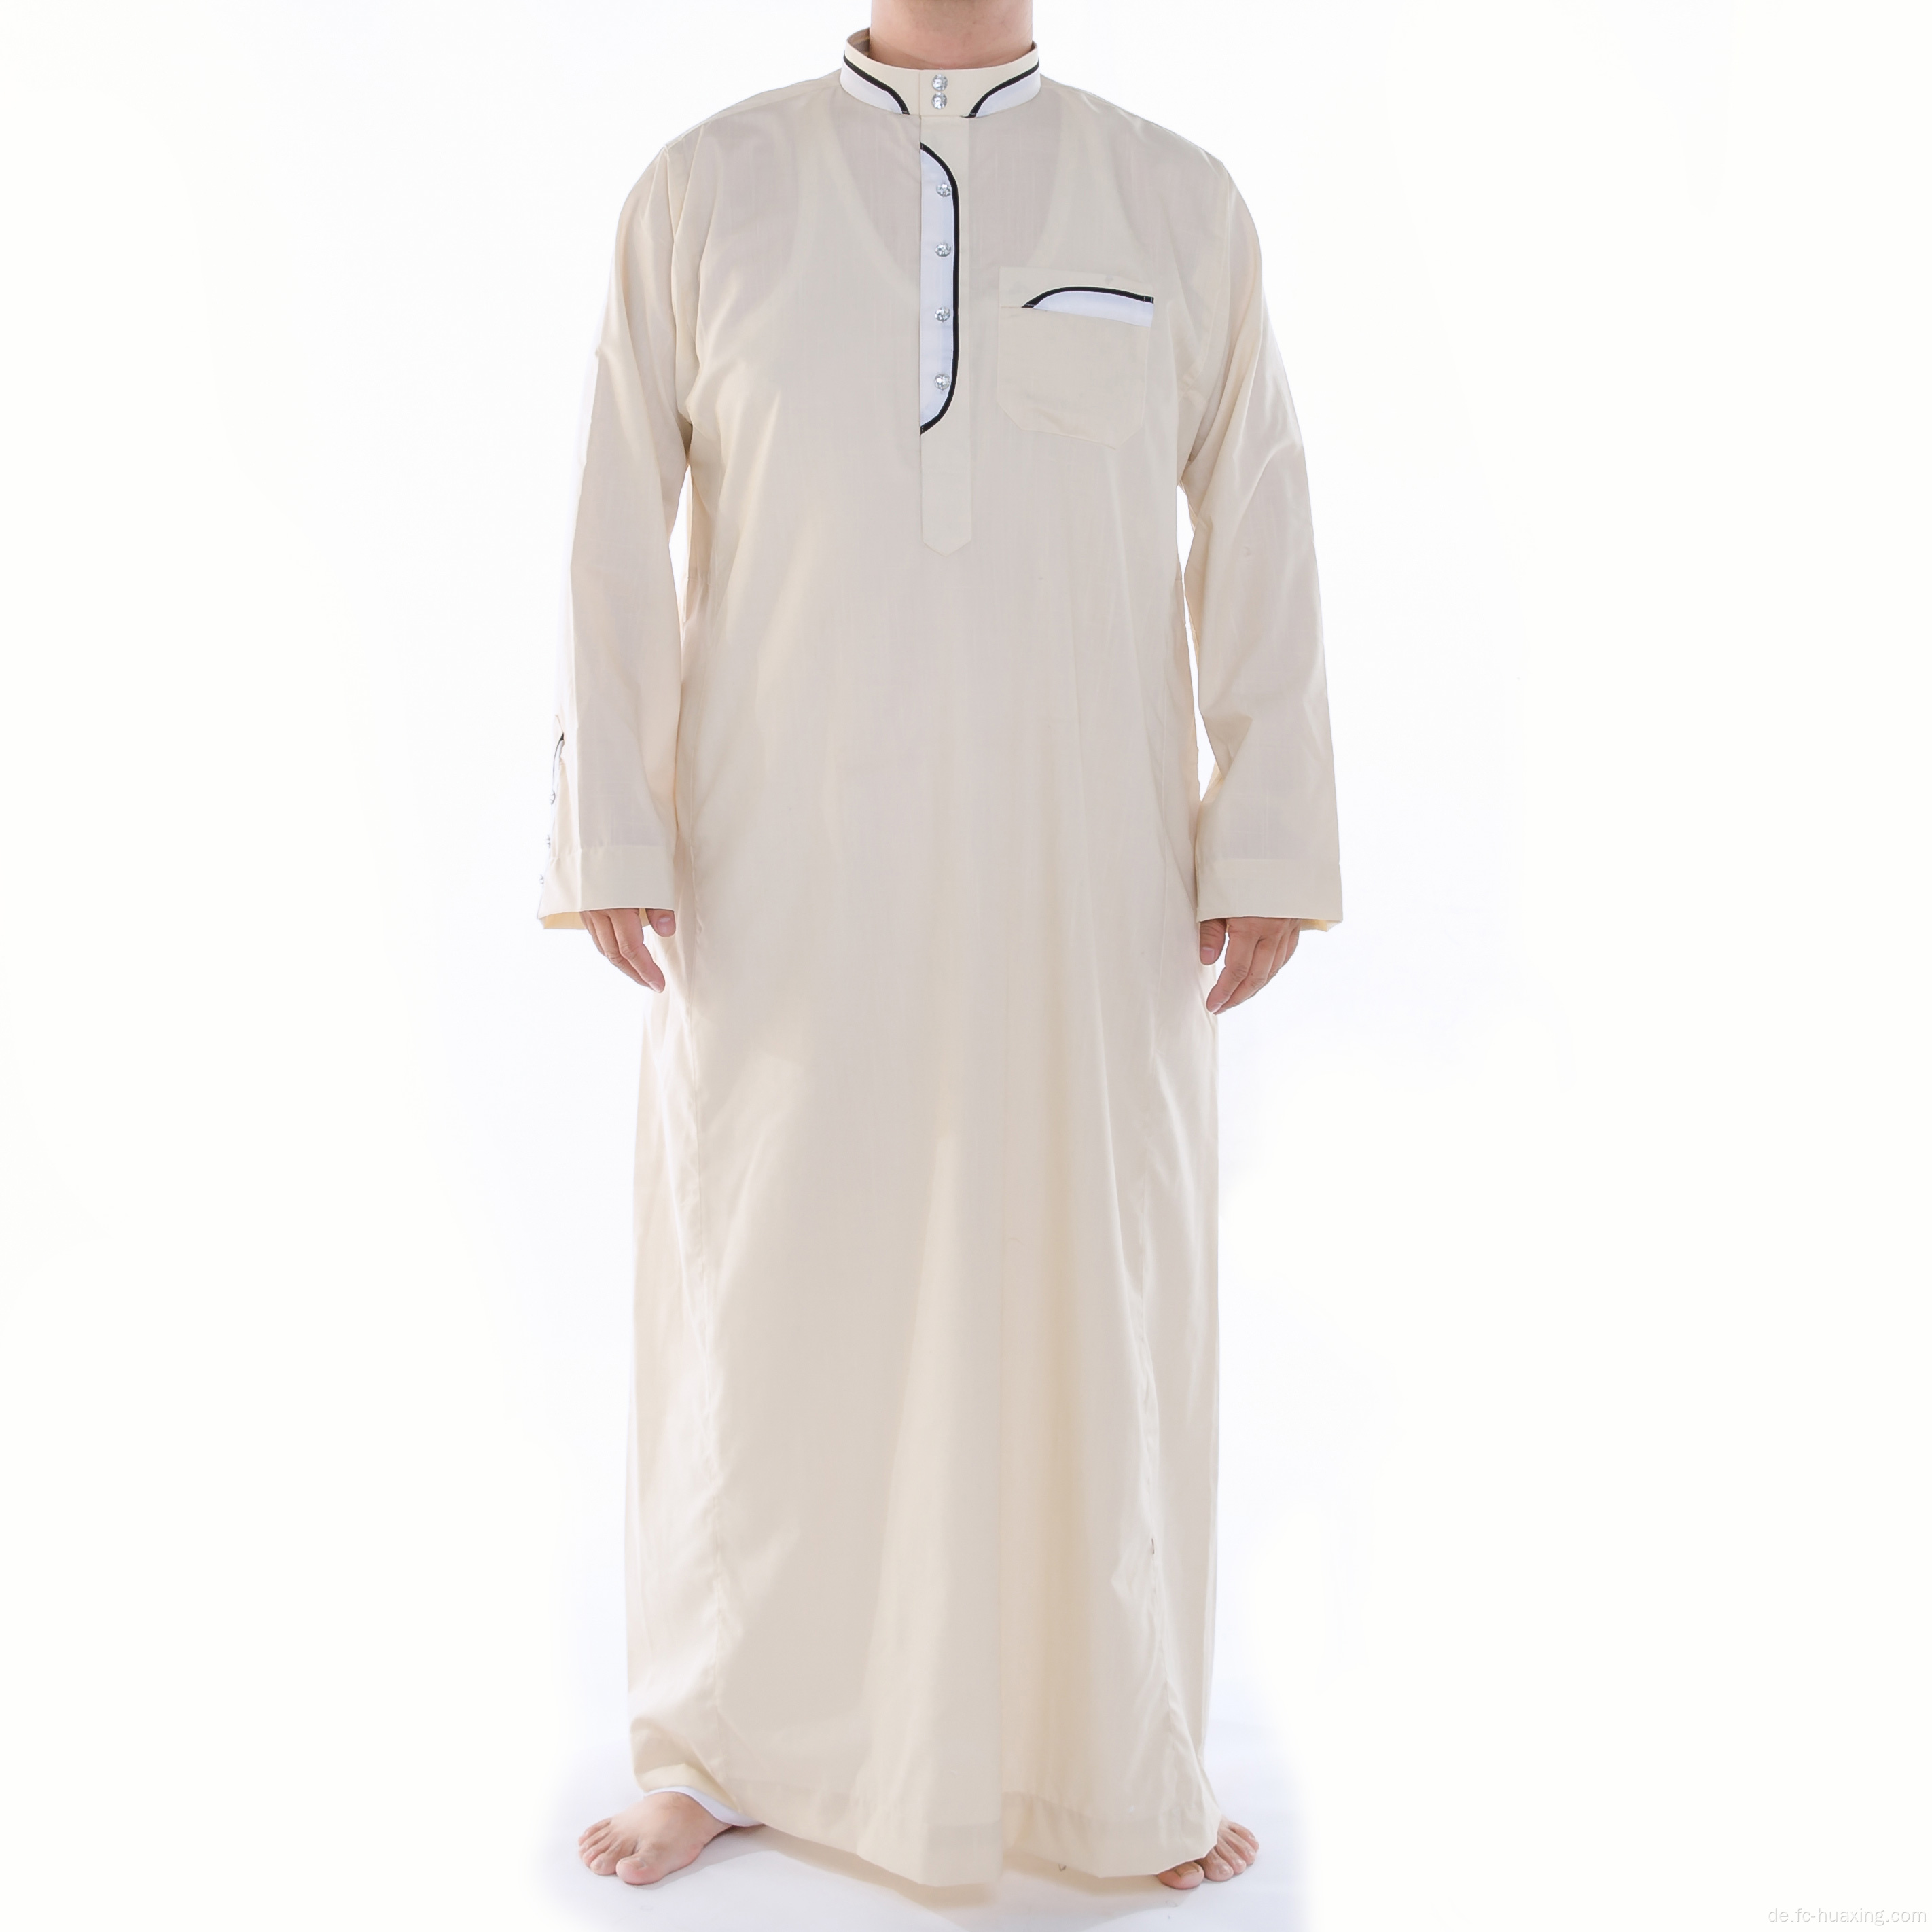 Ethnische Thobe islamische Kleidung für Erwachsene